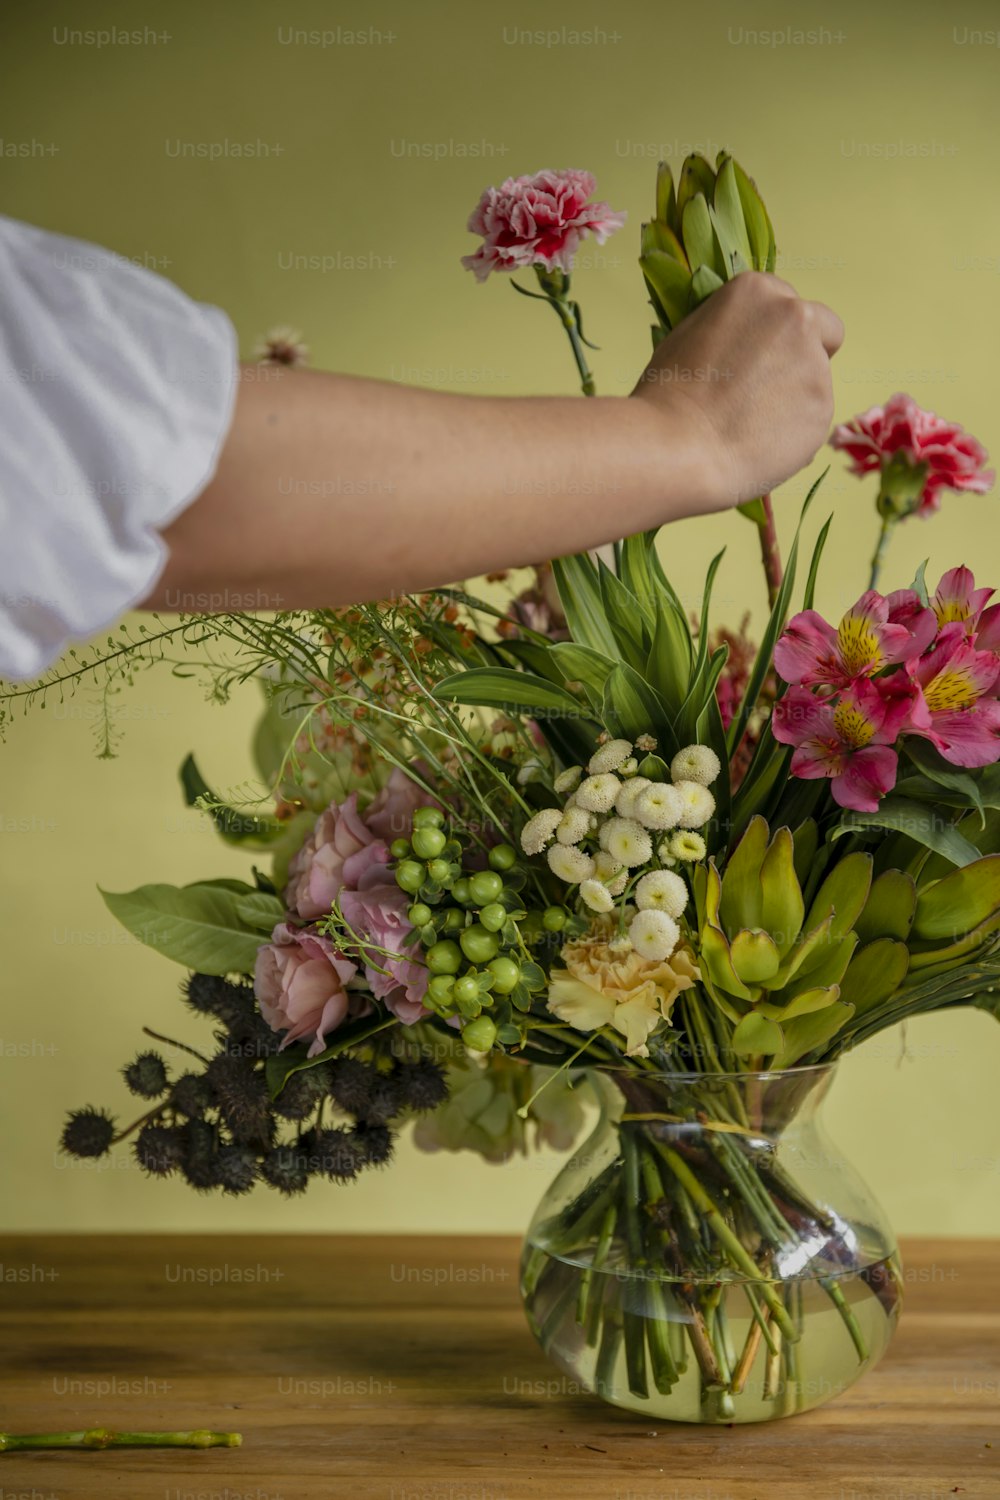 Una persona arreglando flores en un jarrón sobre una mesa